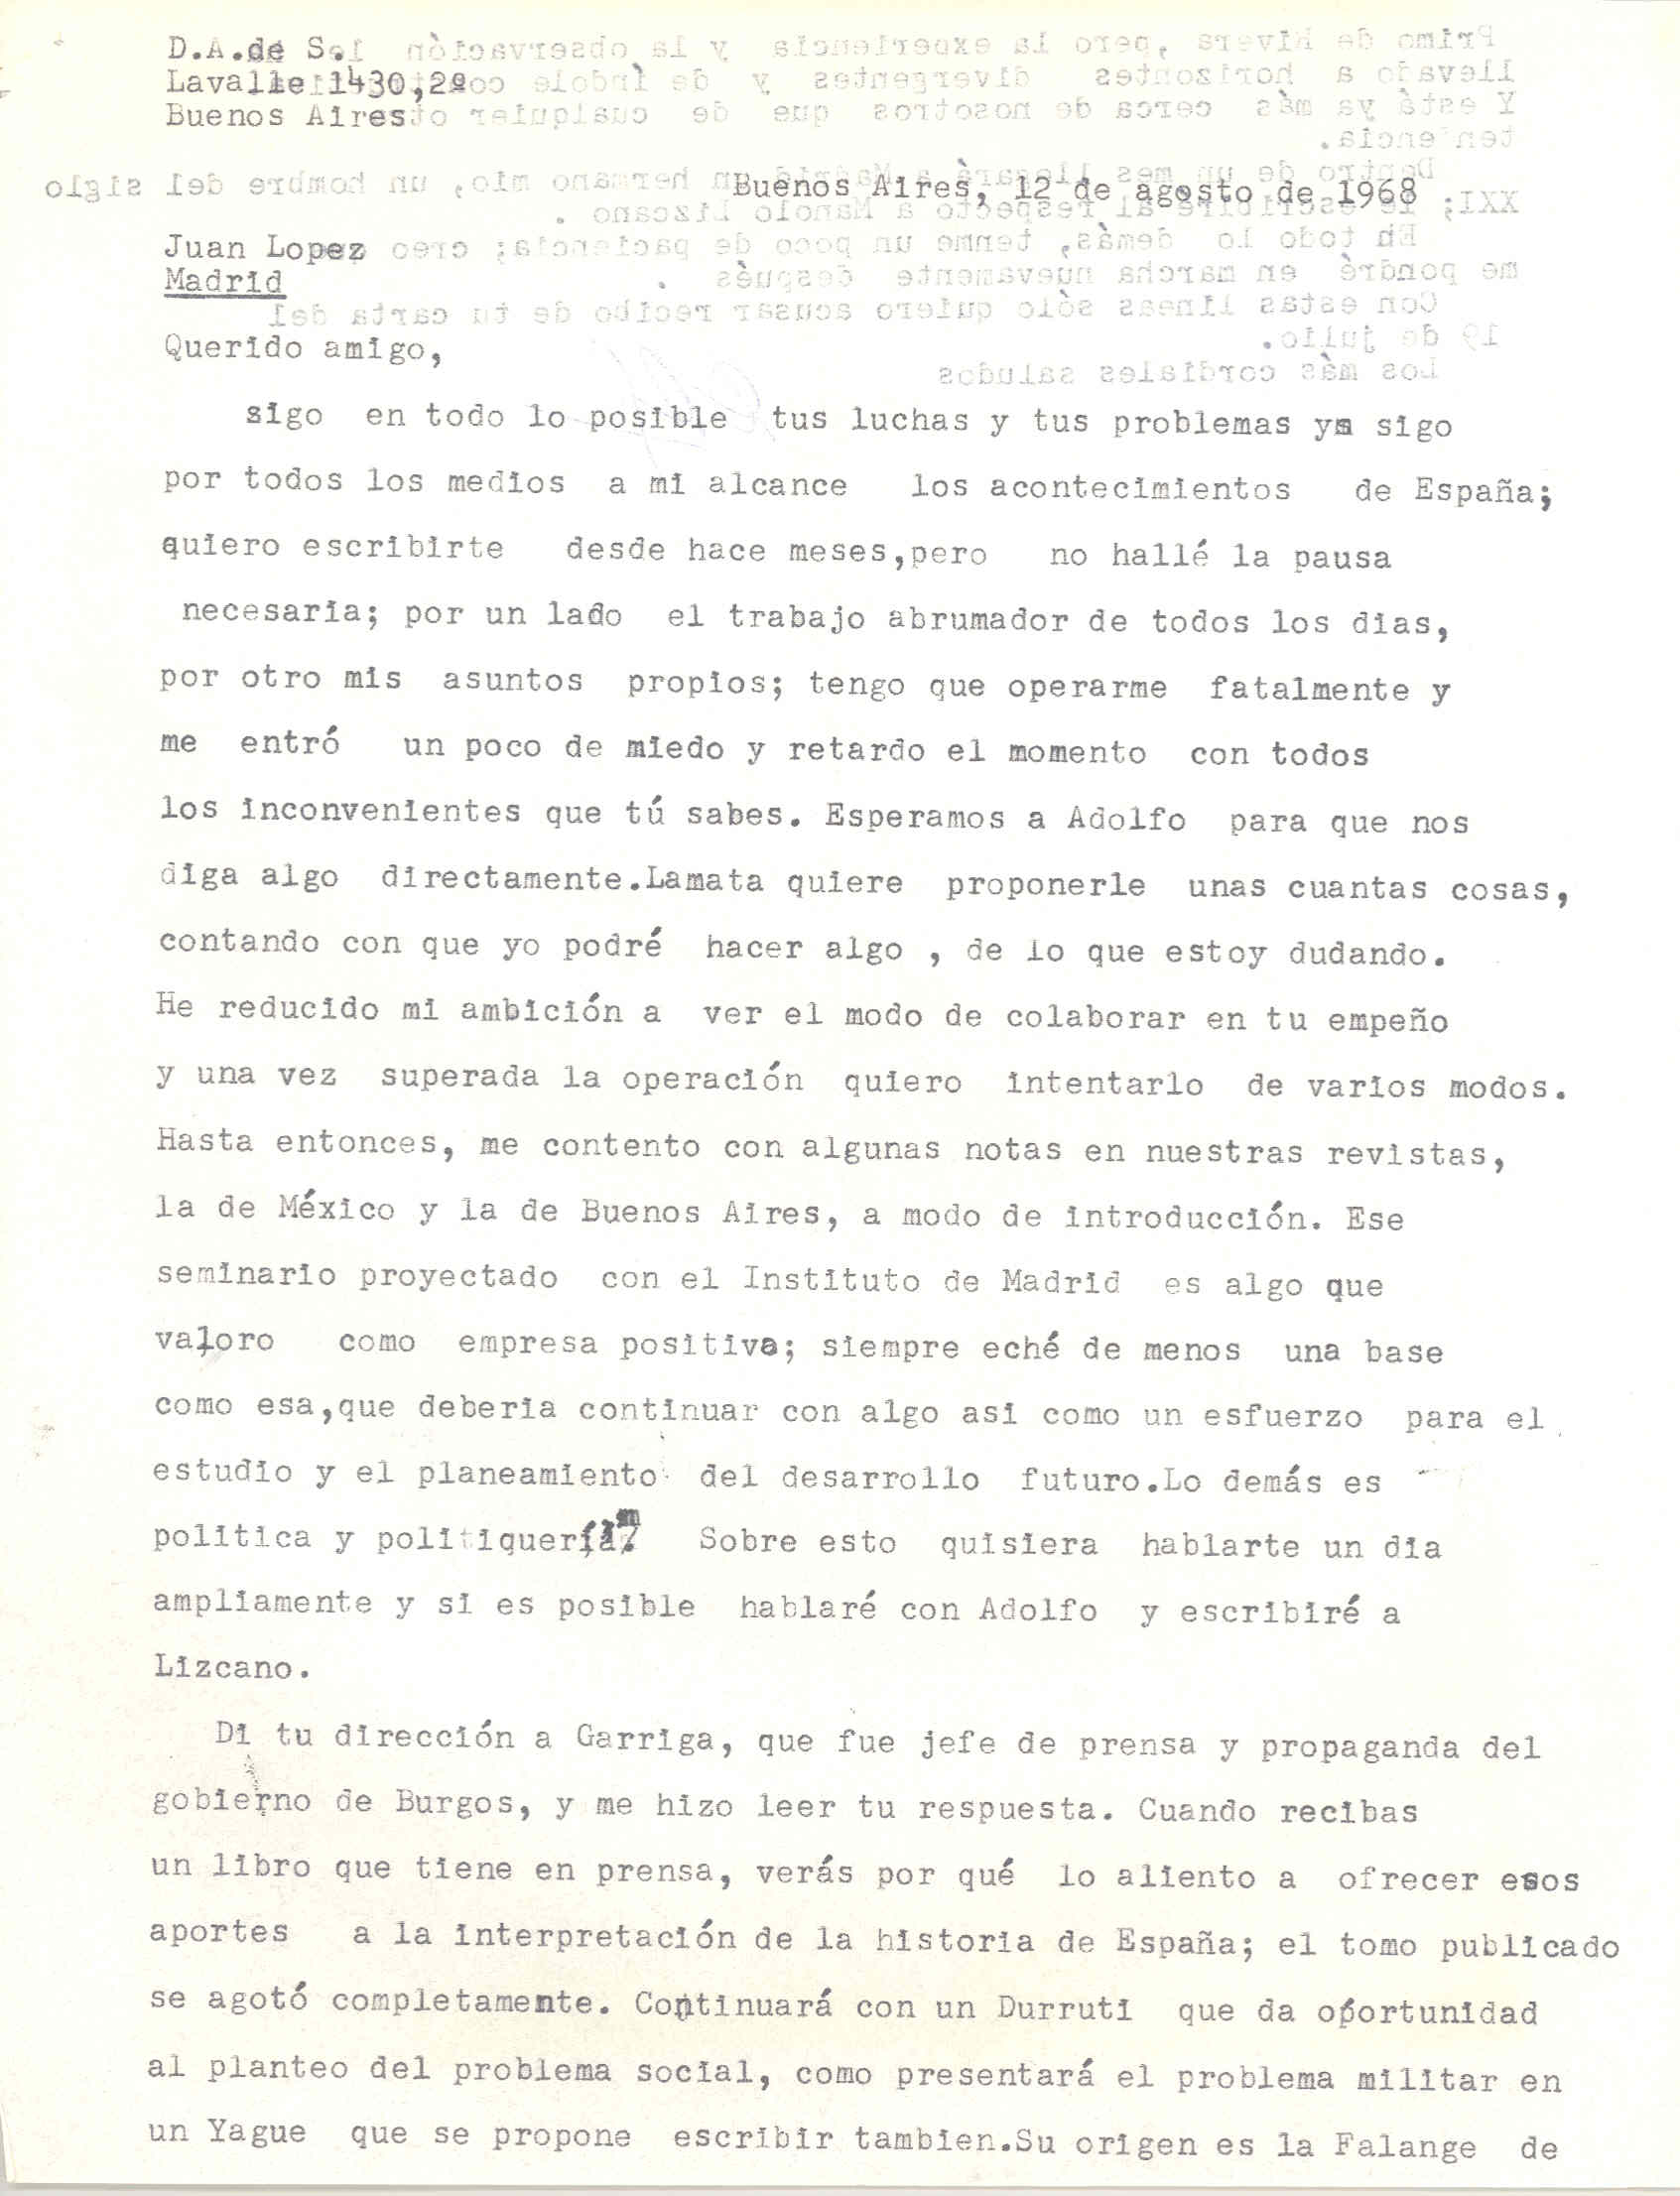 Carta de Diego Abad de Santillán sobre sus ambiciones por colaborar en el futuro.